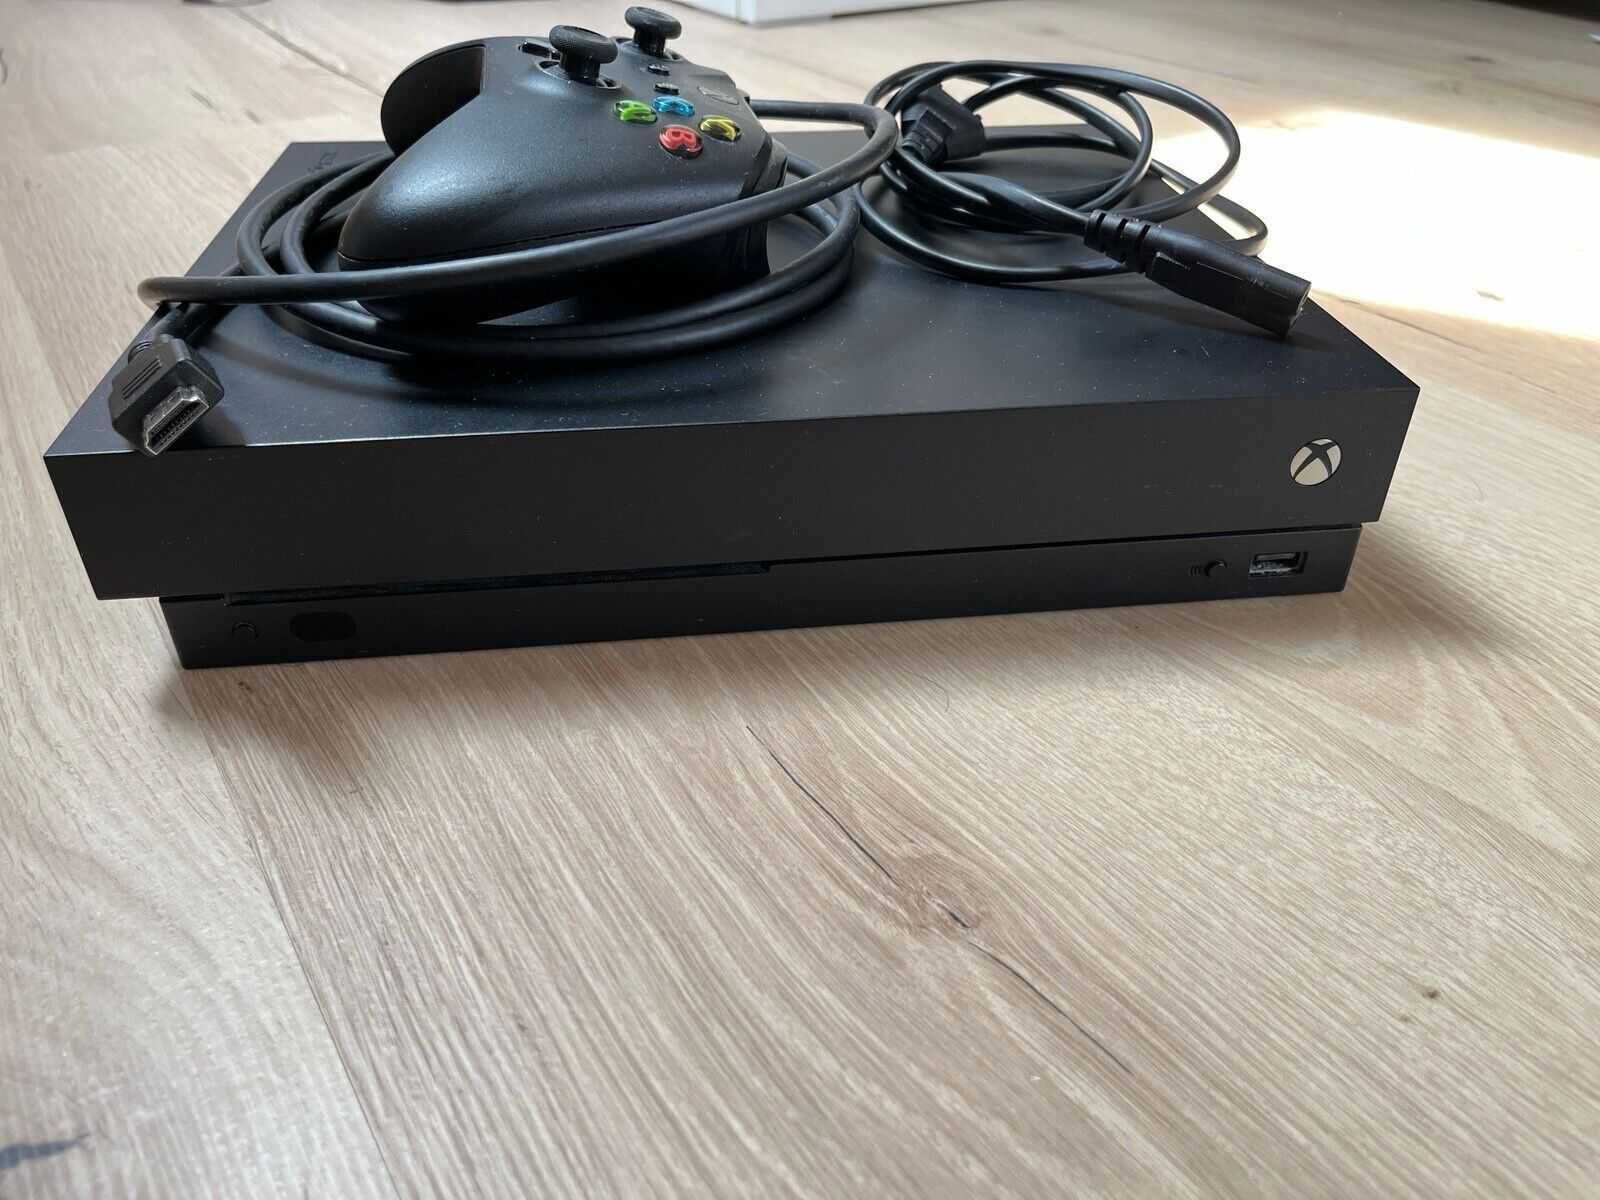 Xbox One X 1tb 4K